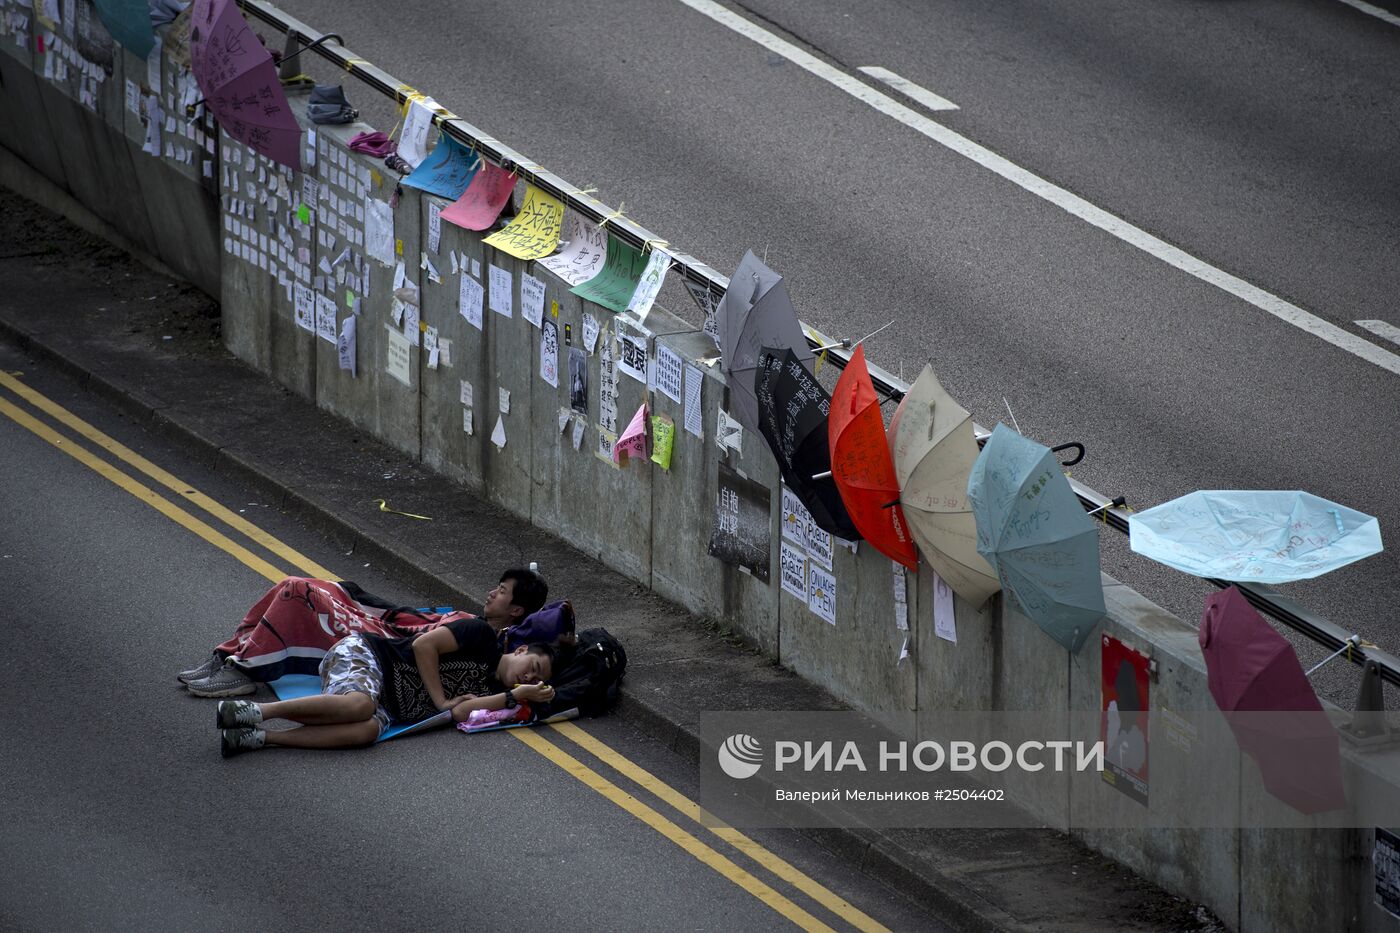 Акции протеста за демократизацию выборов в Гонконге